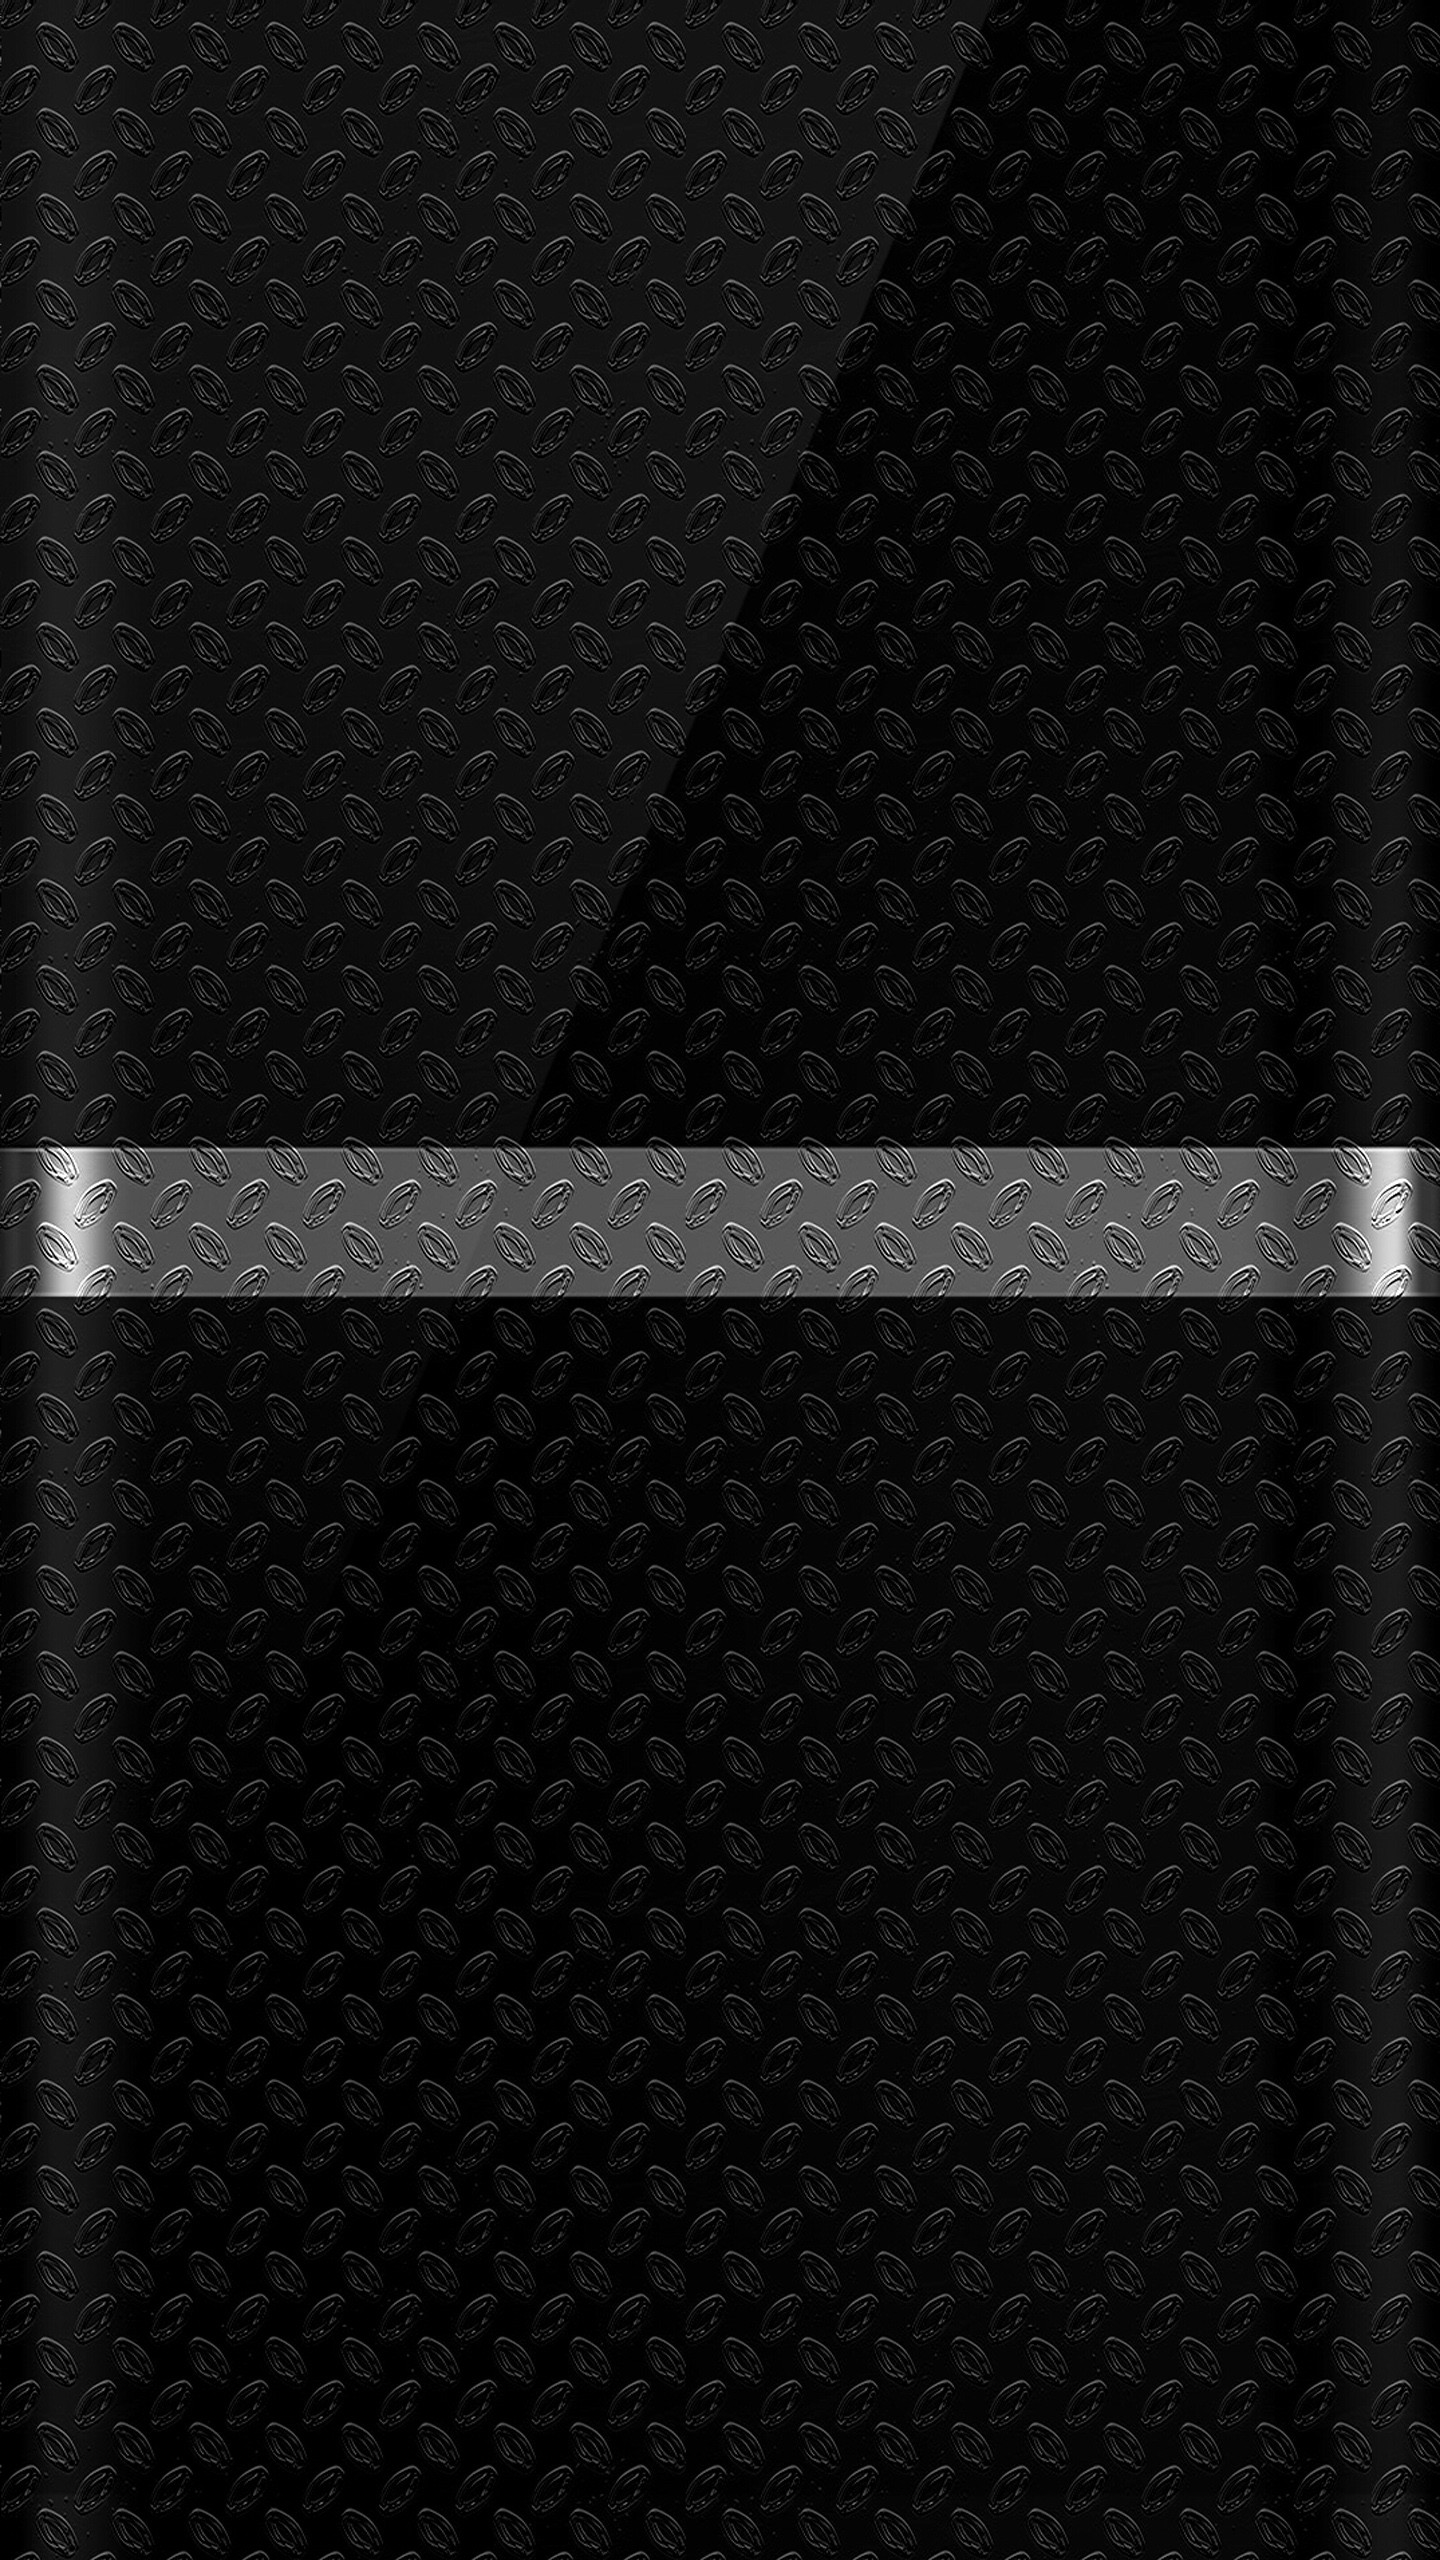 Картинка на телефон вертикальная темная. Черные обои. Чёрная заставка на телефон. Строгие обои на телефон. Темные заставки на смартфон.